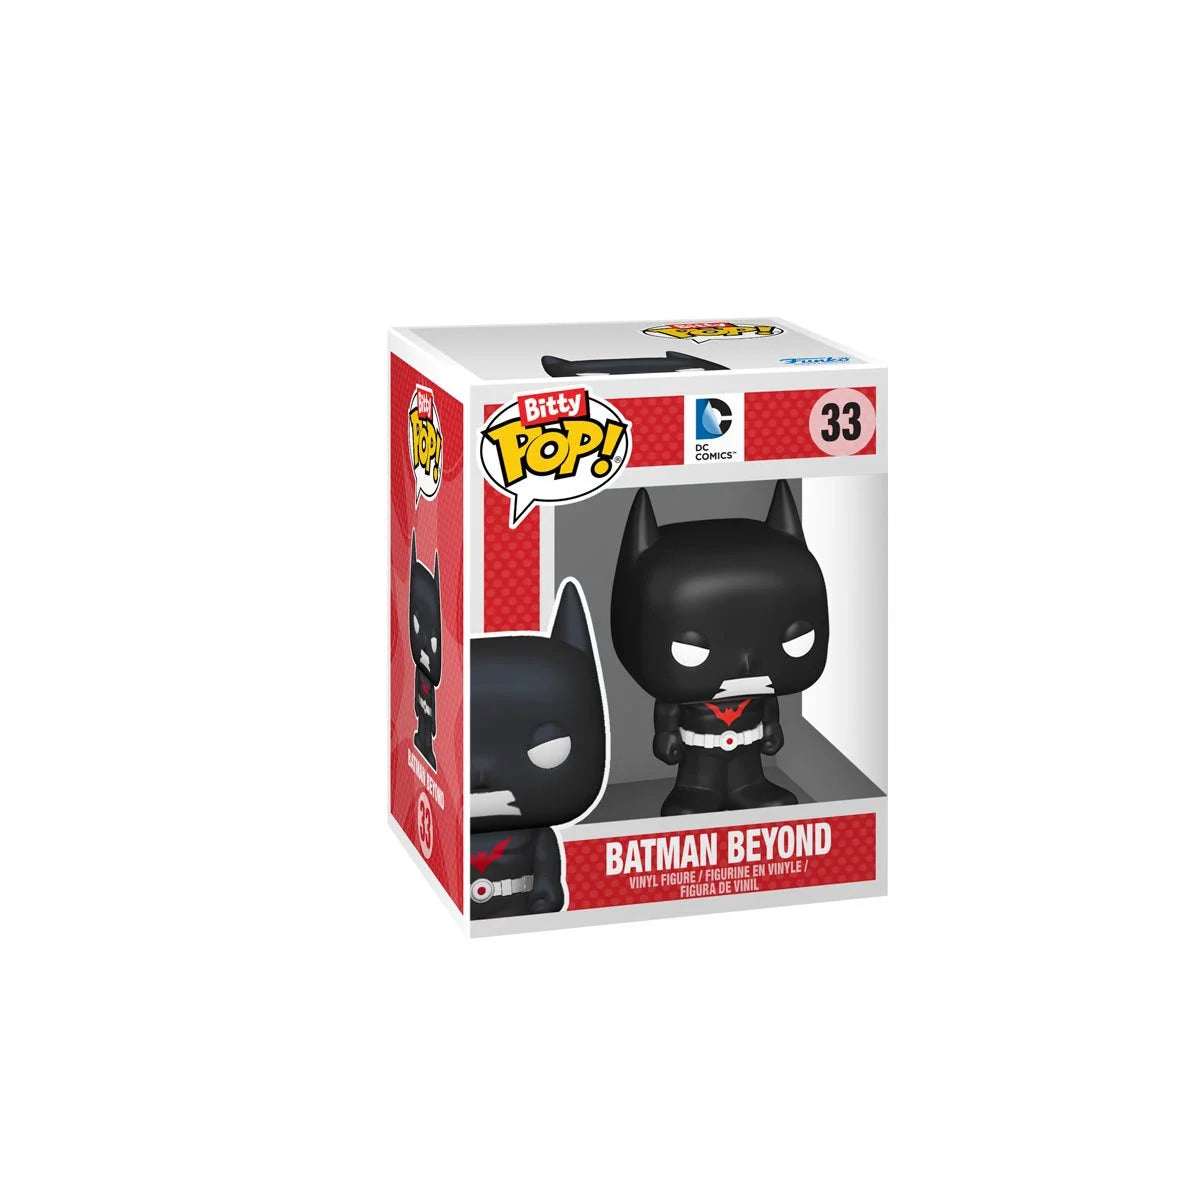 Batman Bitty Pop! Mini-Figure batman beyond - Heretoserveyou